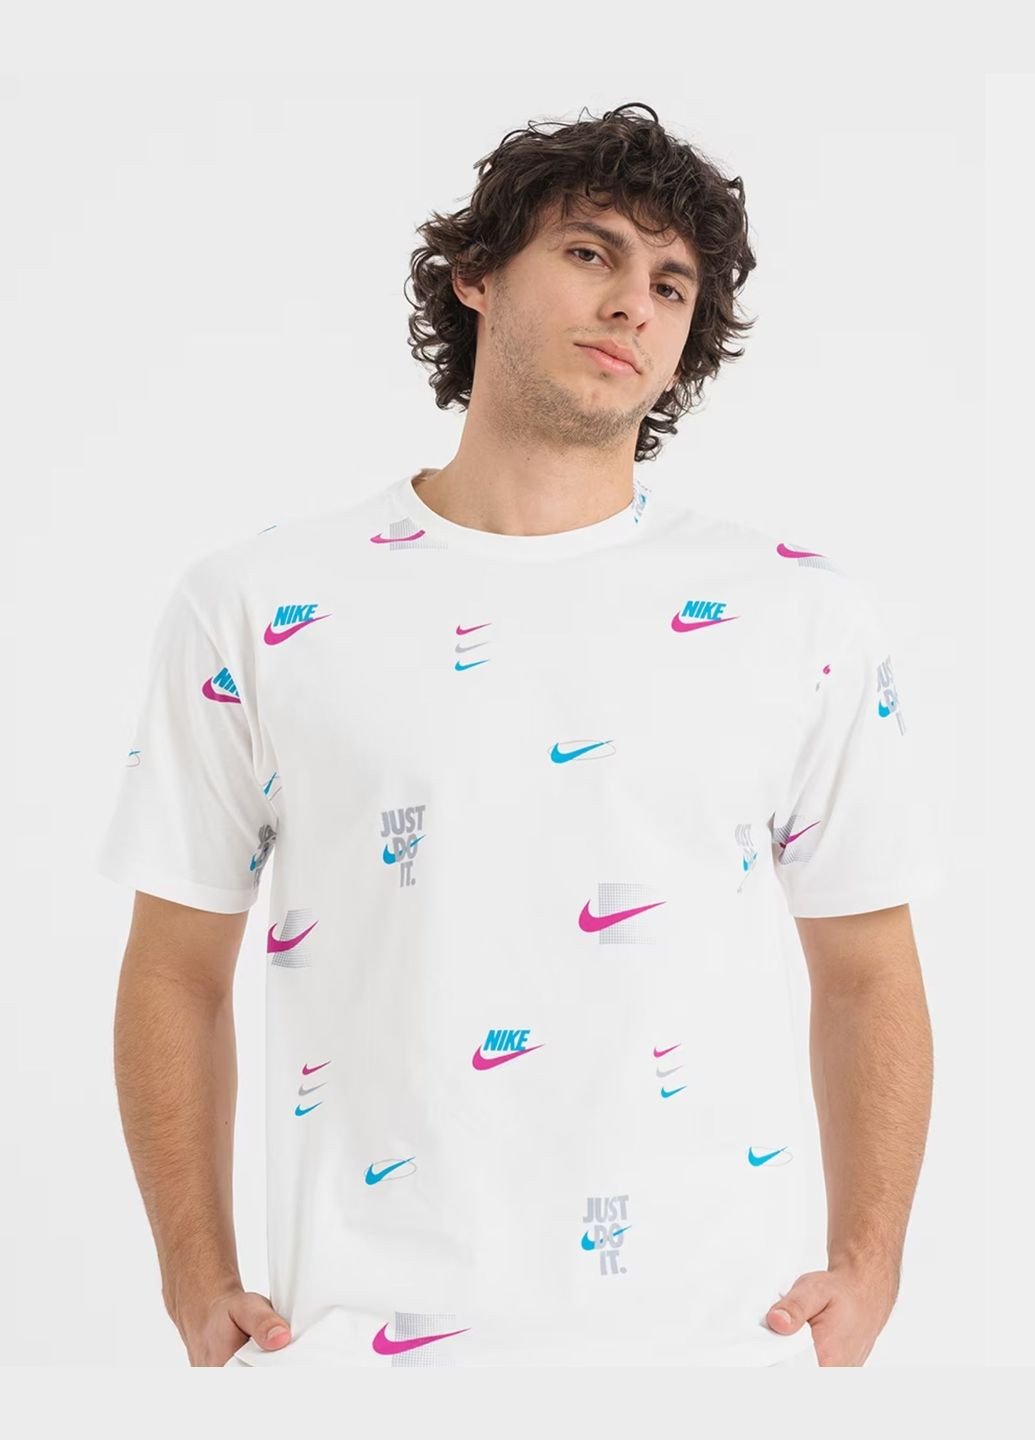 Белая футболка мужская tee m90 12mo lbr aop dz2991-100 белая Nike